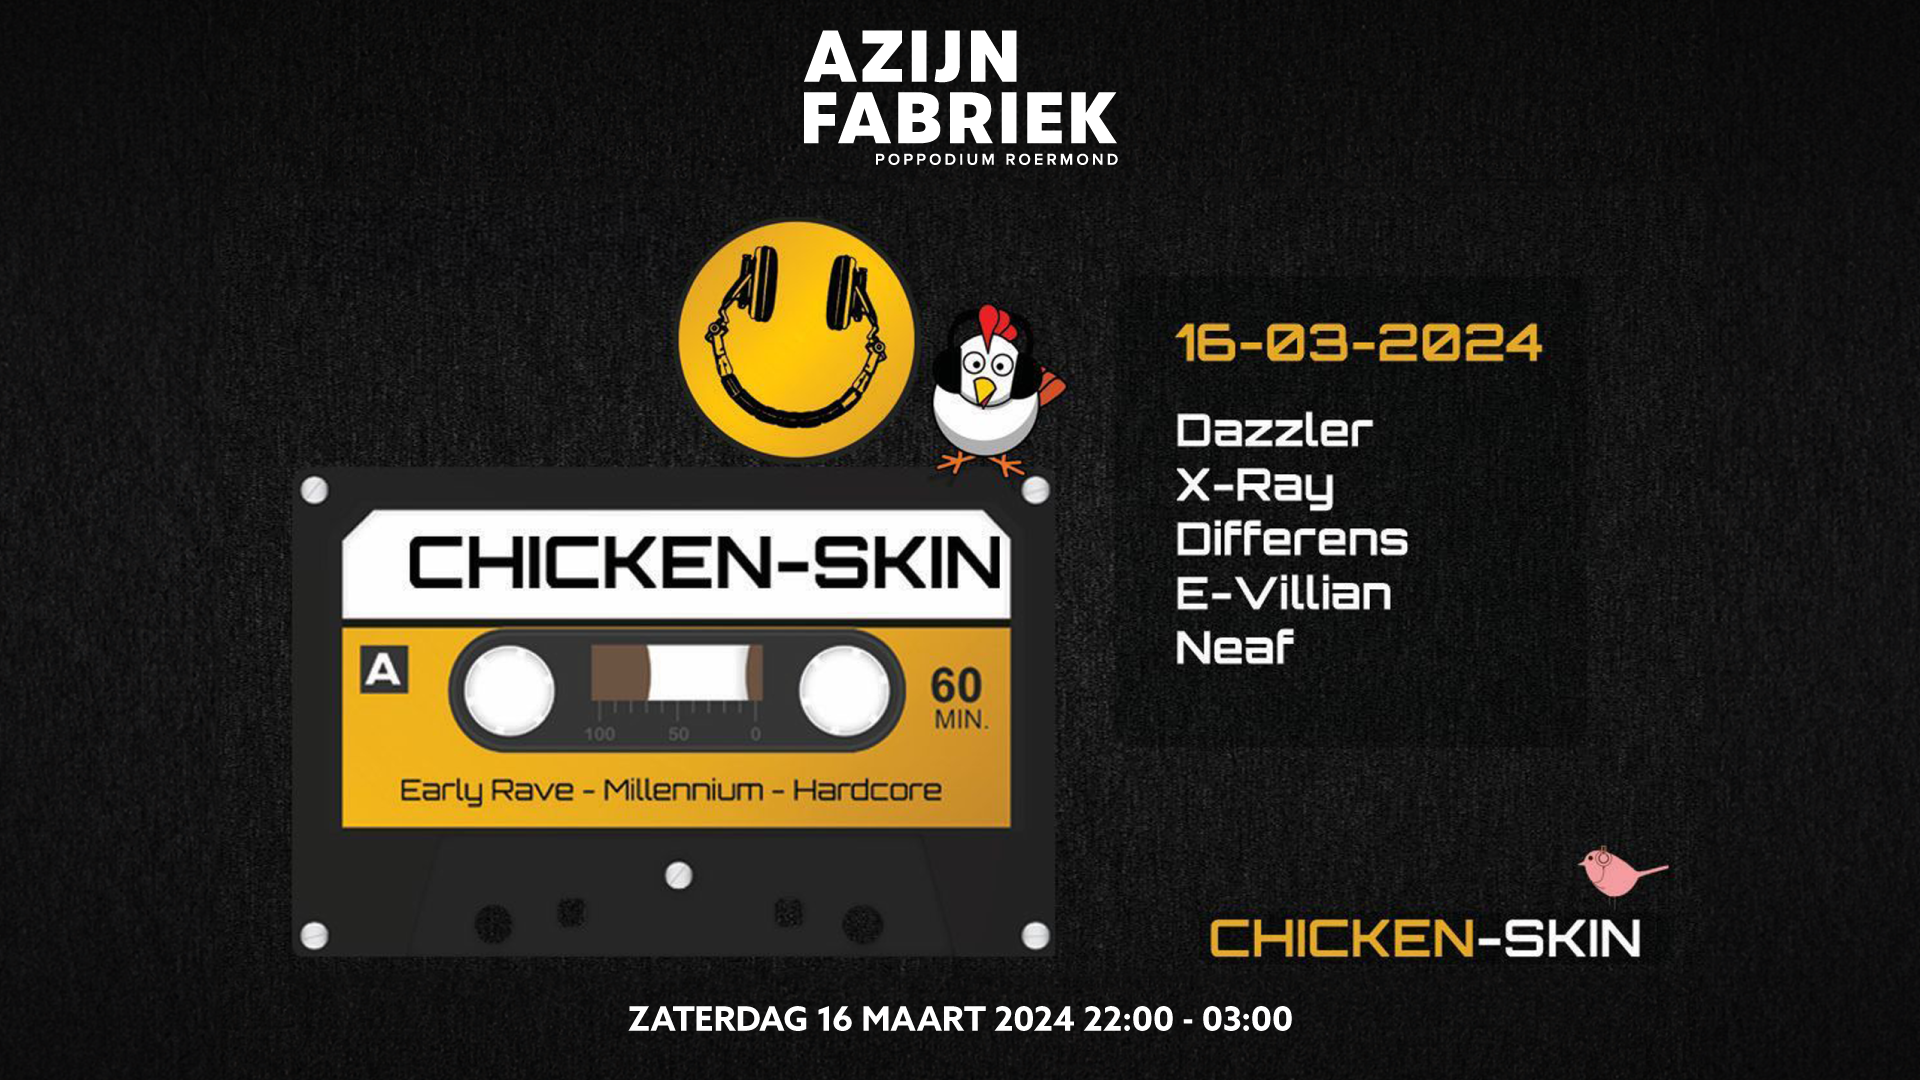 Azijnfabriek | Party - Chicken-Skin